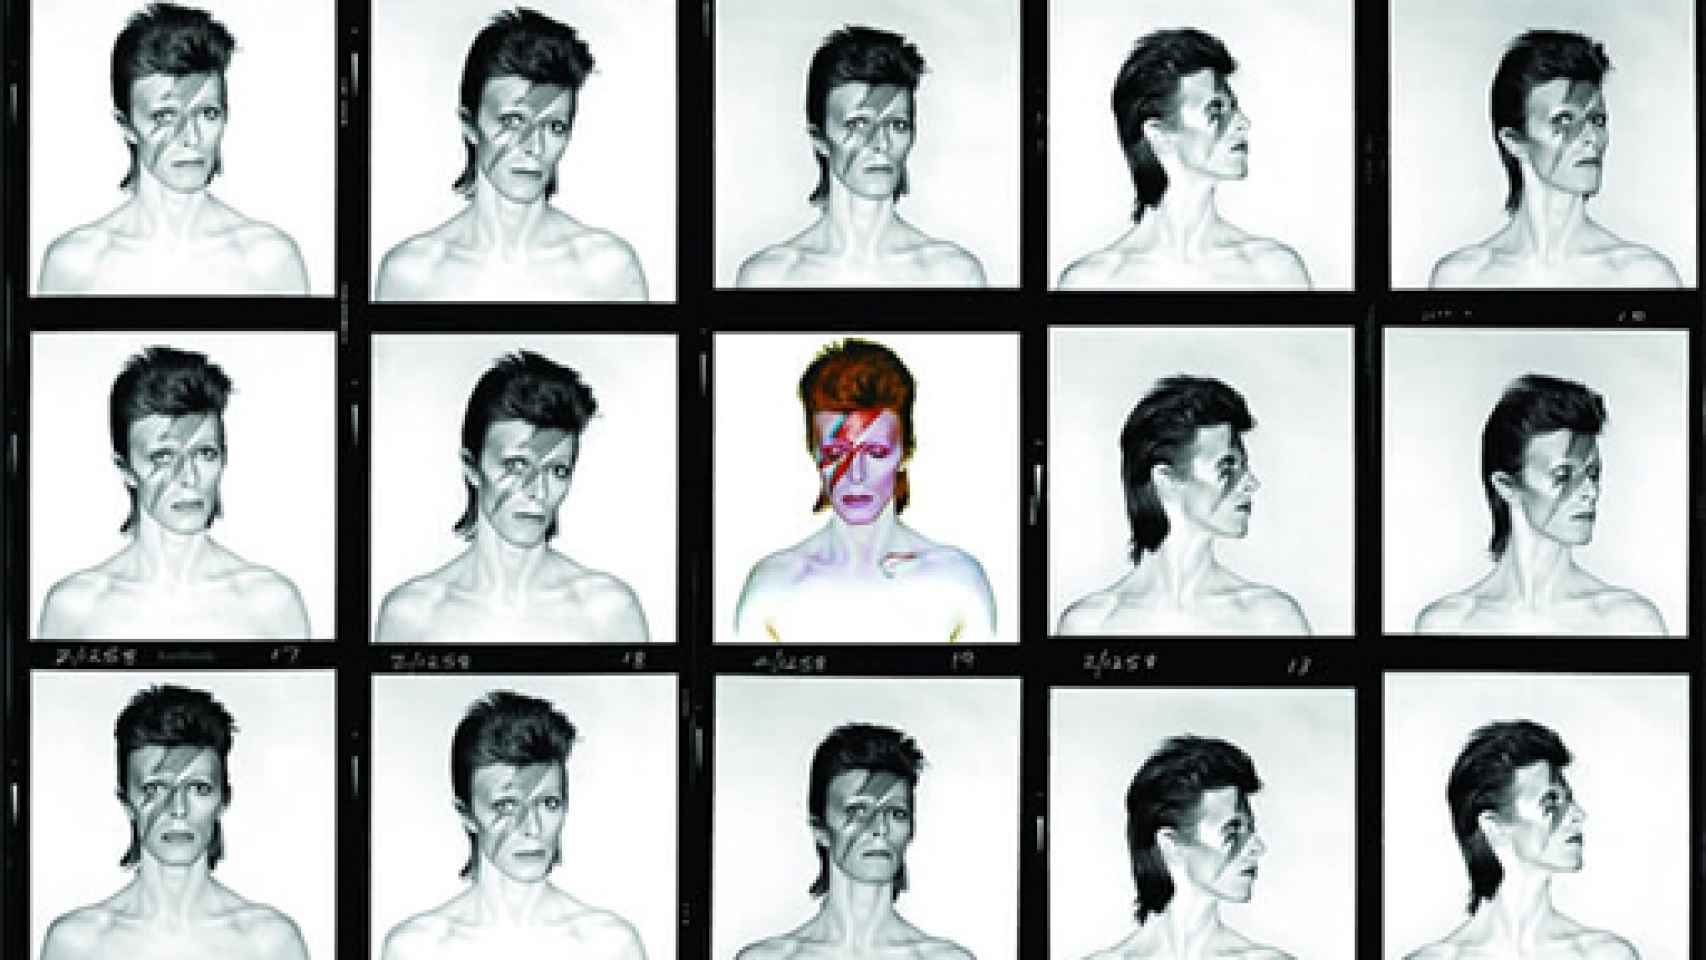 Image: David Bowie, en eterna construcción